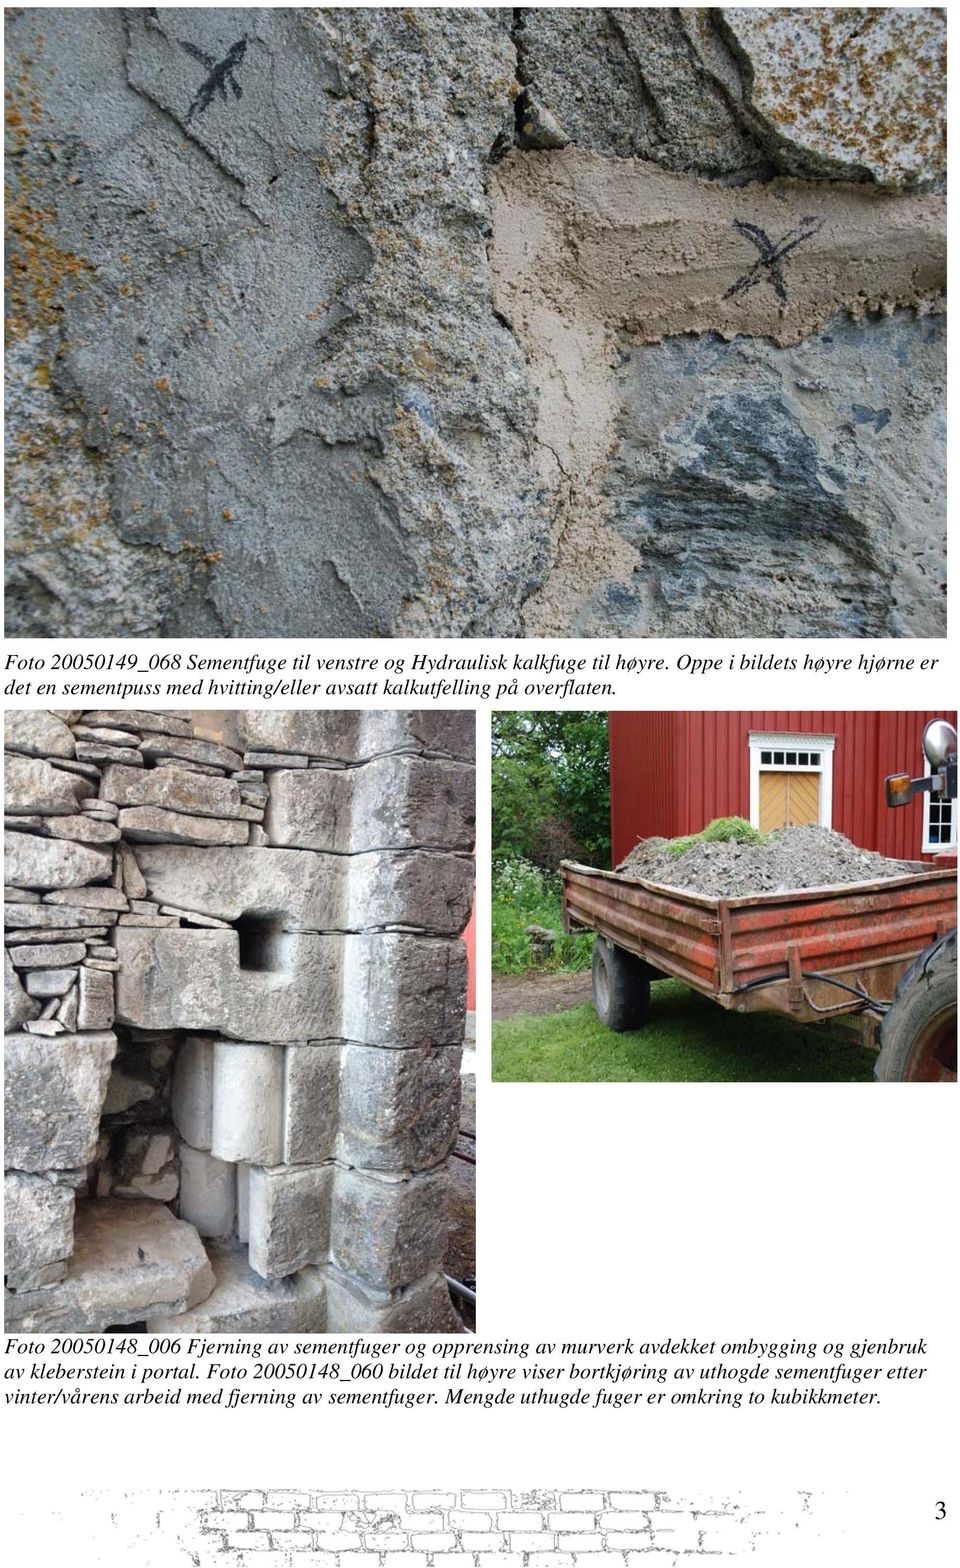 Foto 20050148_006 Fjerning av sementfuger og opprensing av murverk avdekket ombygging og gjenbruk av kleberstein i